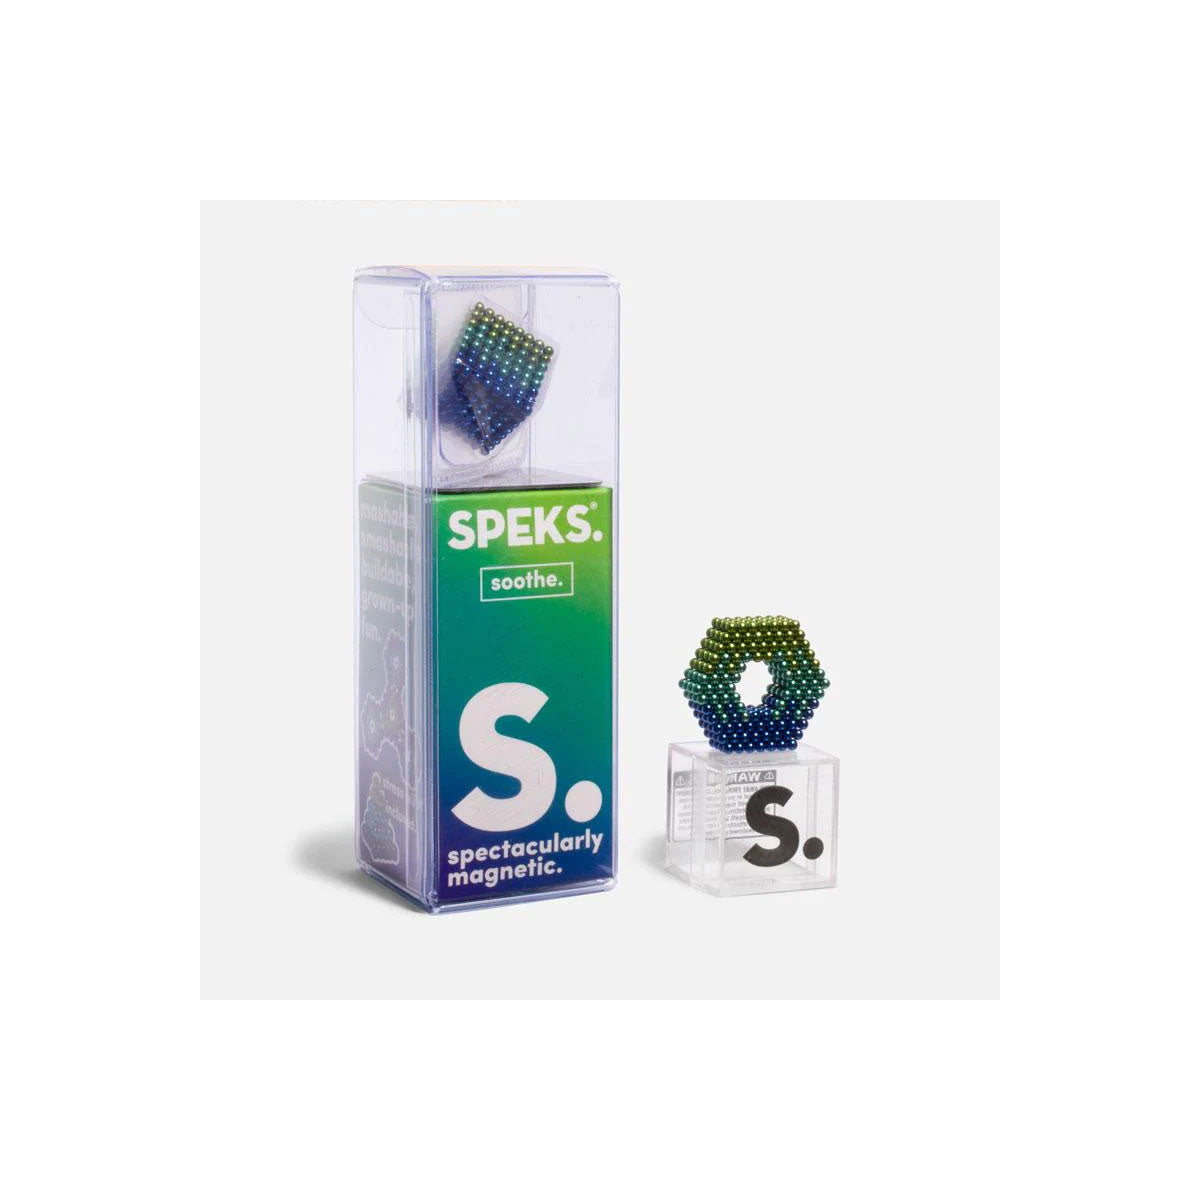 Soothe Speks 512 2.5mm Magnet Balls